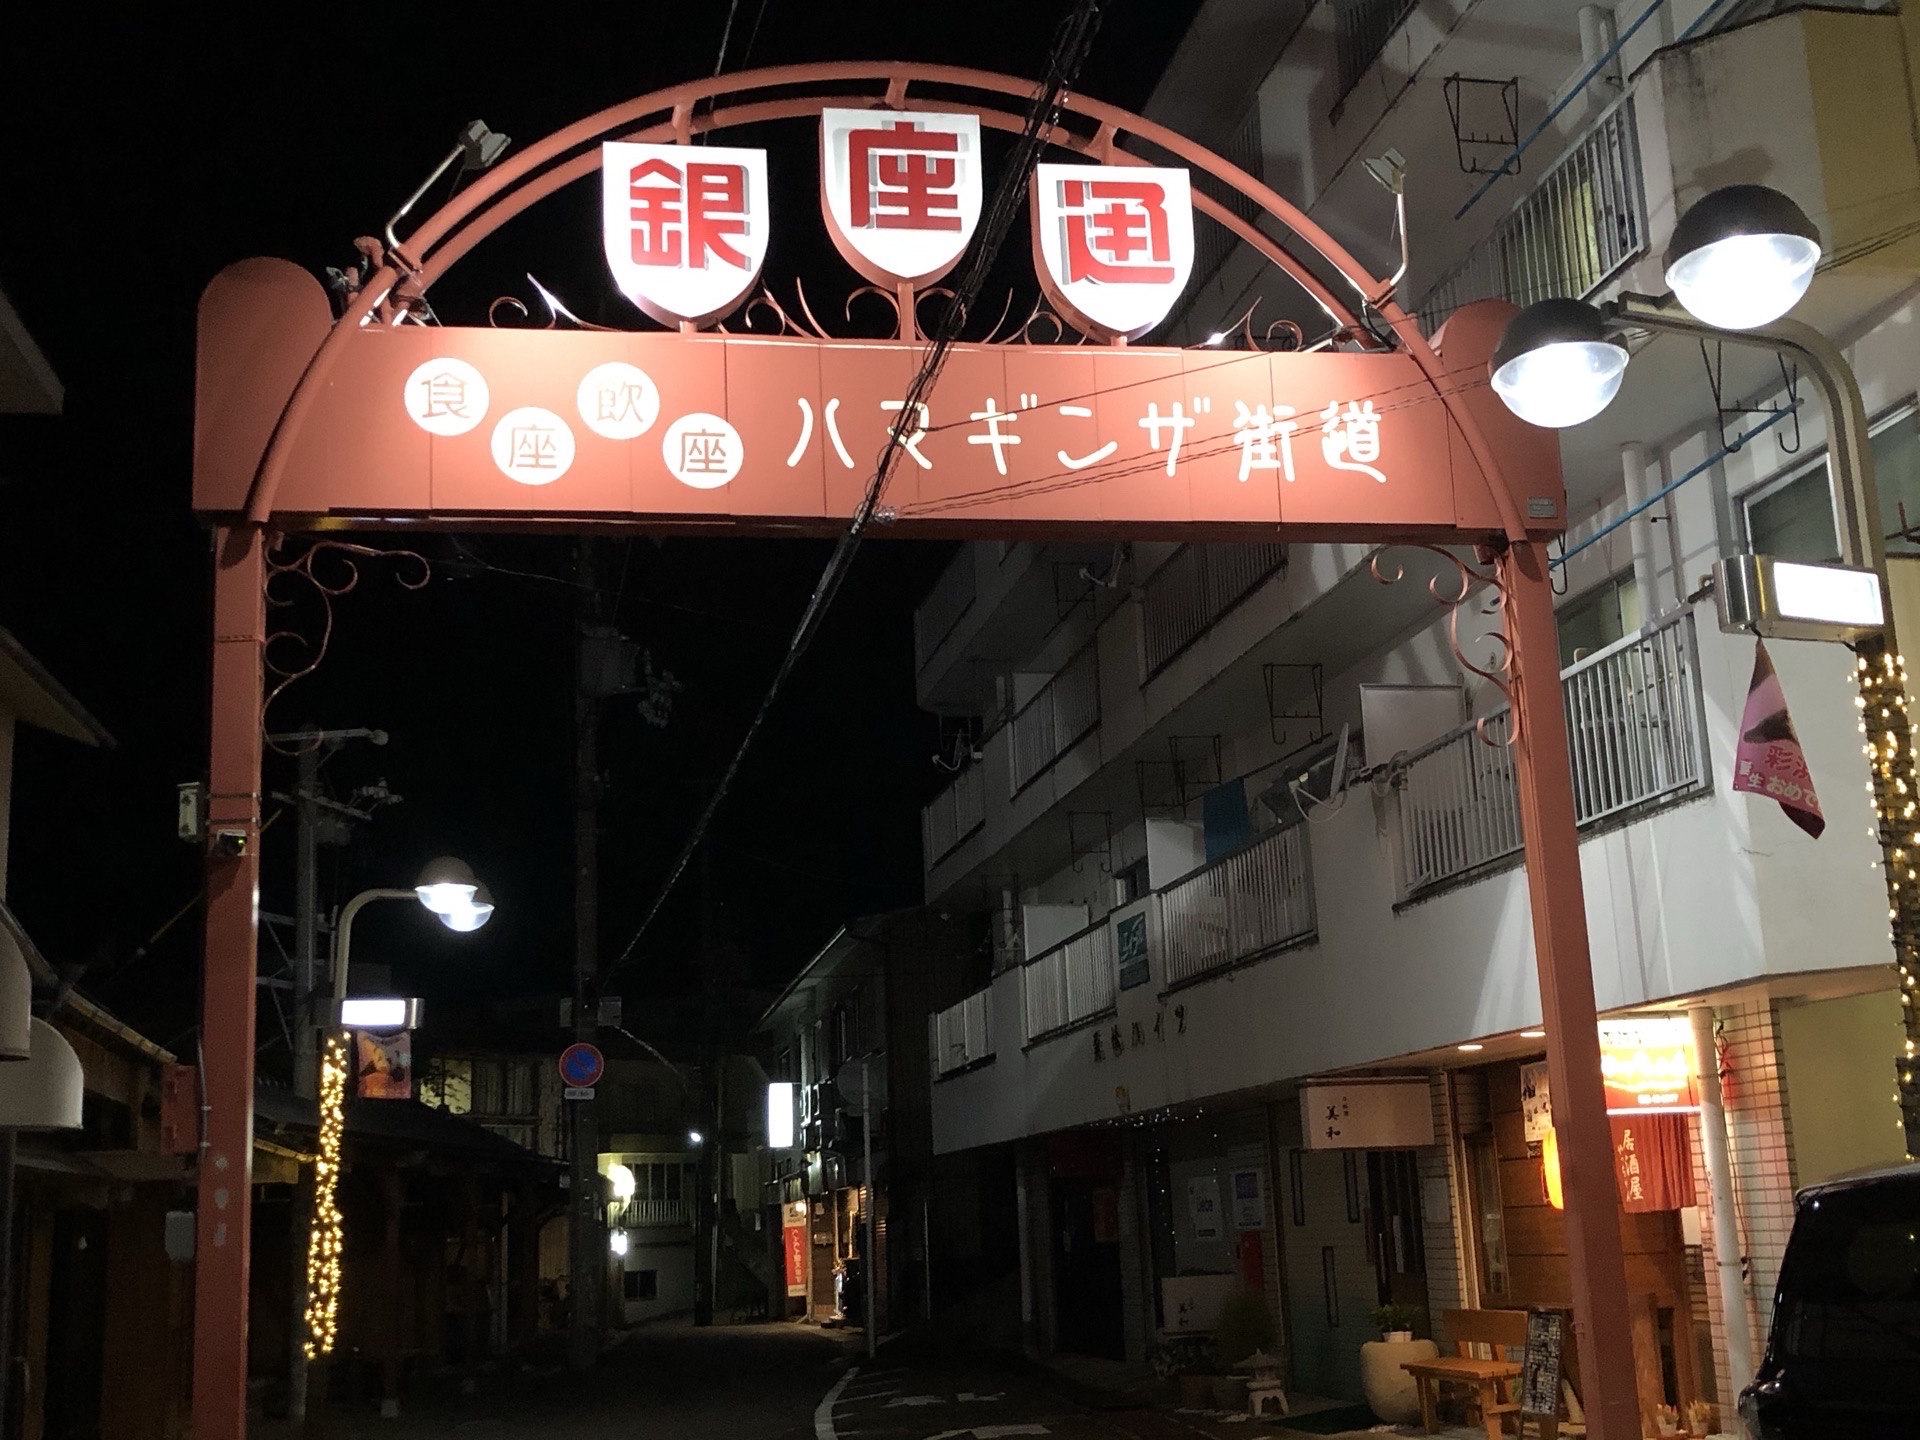 日本白滨银座街：夜景 夜店 夜宵。和歌山南部旅游胜地。夜晚宁静 秩序。海浪轻拍，白浪逐沙。